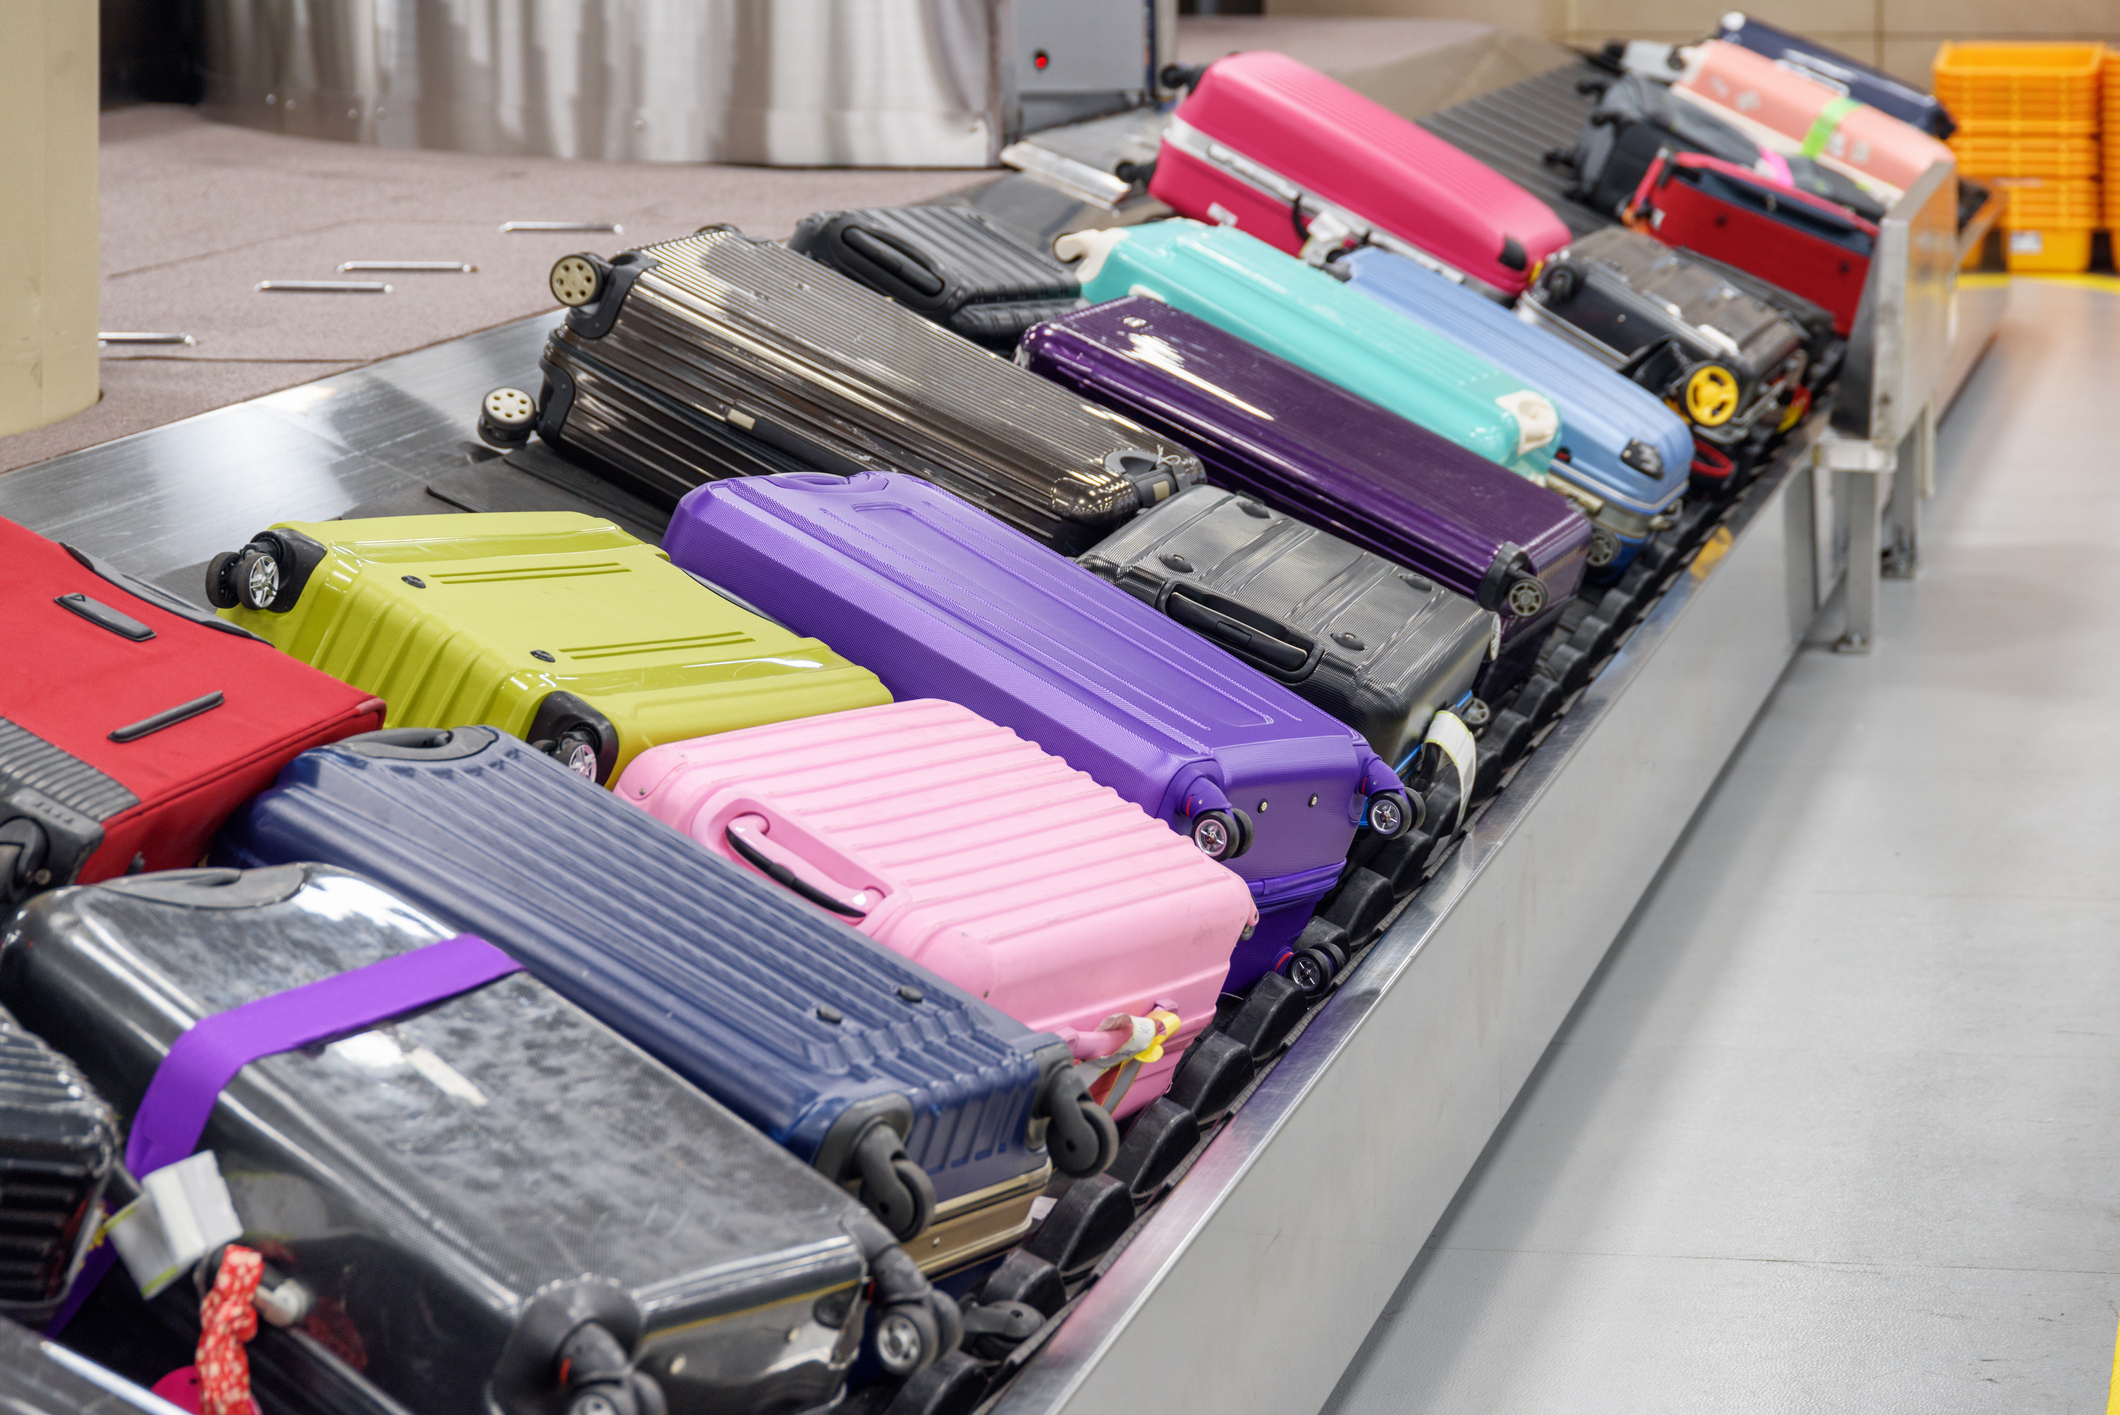 Kufferter hober sig op i store mængder på en bagagekarrusel.